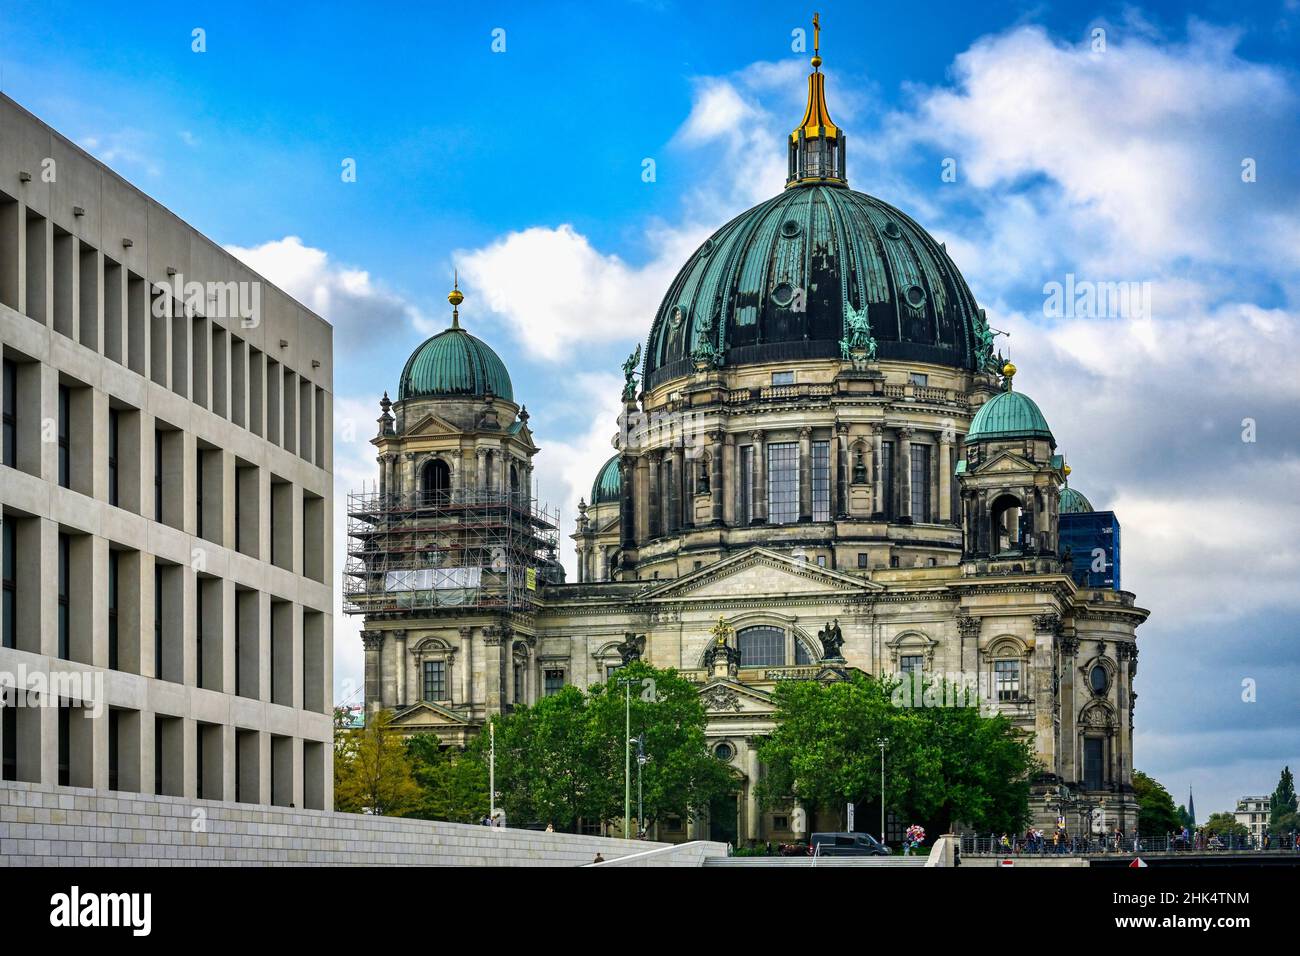 Berlin Cathedral, UNESCO World Heritage Site, Museum Island, Unter den Linden, Berlin, Germany Stock Photo